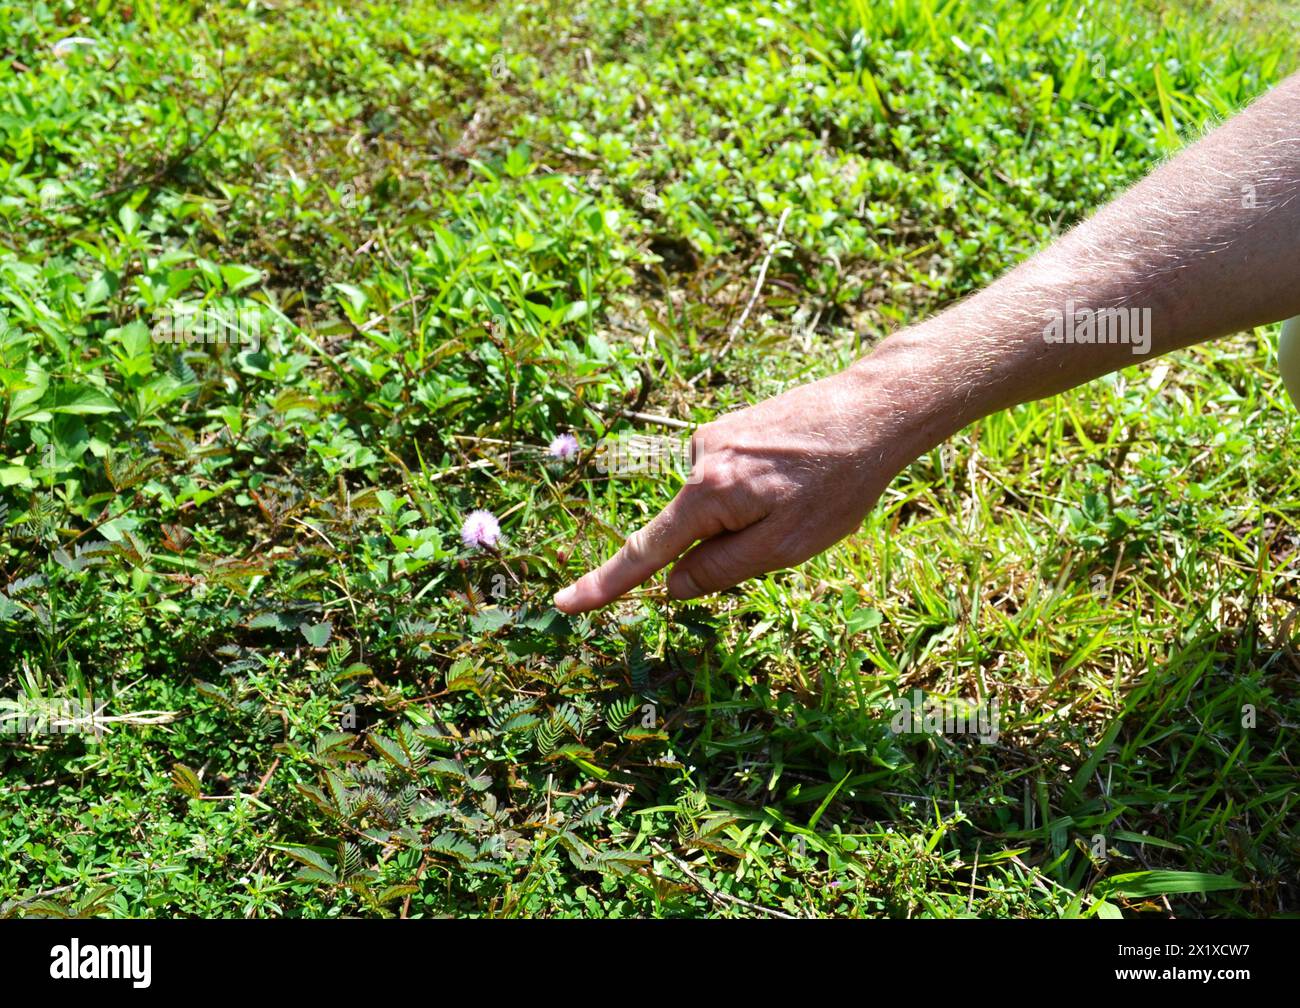 Une main coupée touche une petite plante qui, lorsqu'elle est touchée, bourgeonne automatiquement qu'il appelle la plante « Princess Shame » Banque D'Images